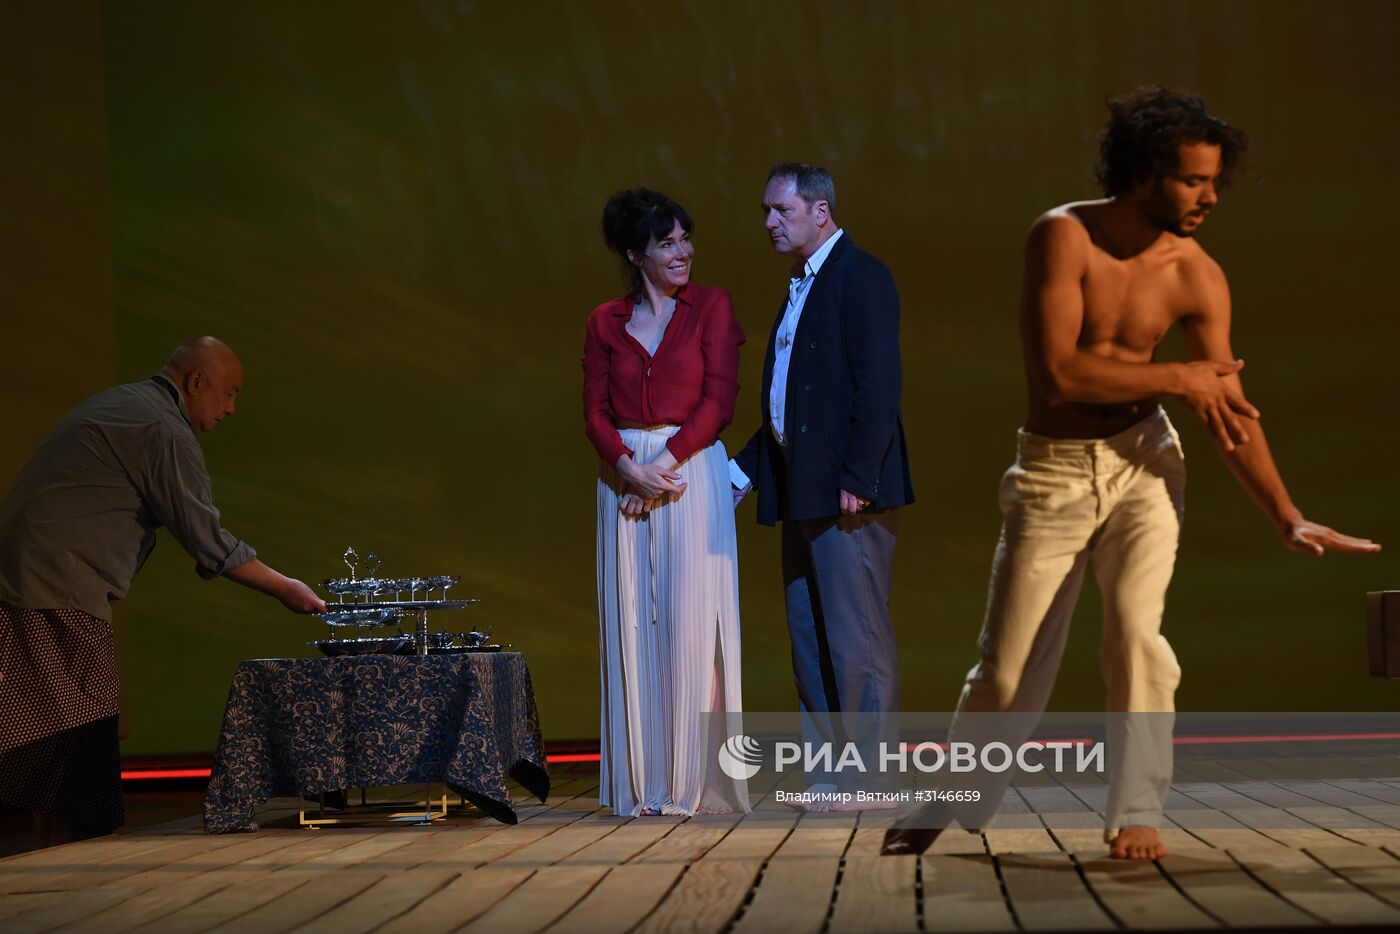 Спектакль "Тайная сила" в рамках театрального фестиваля им. Чехова